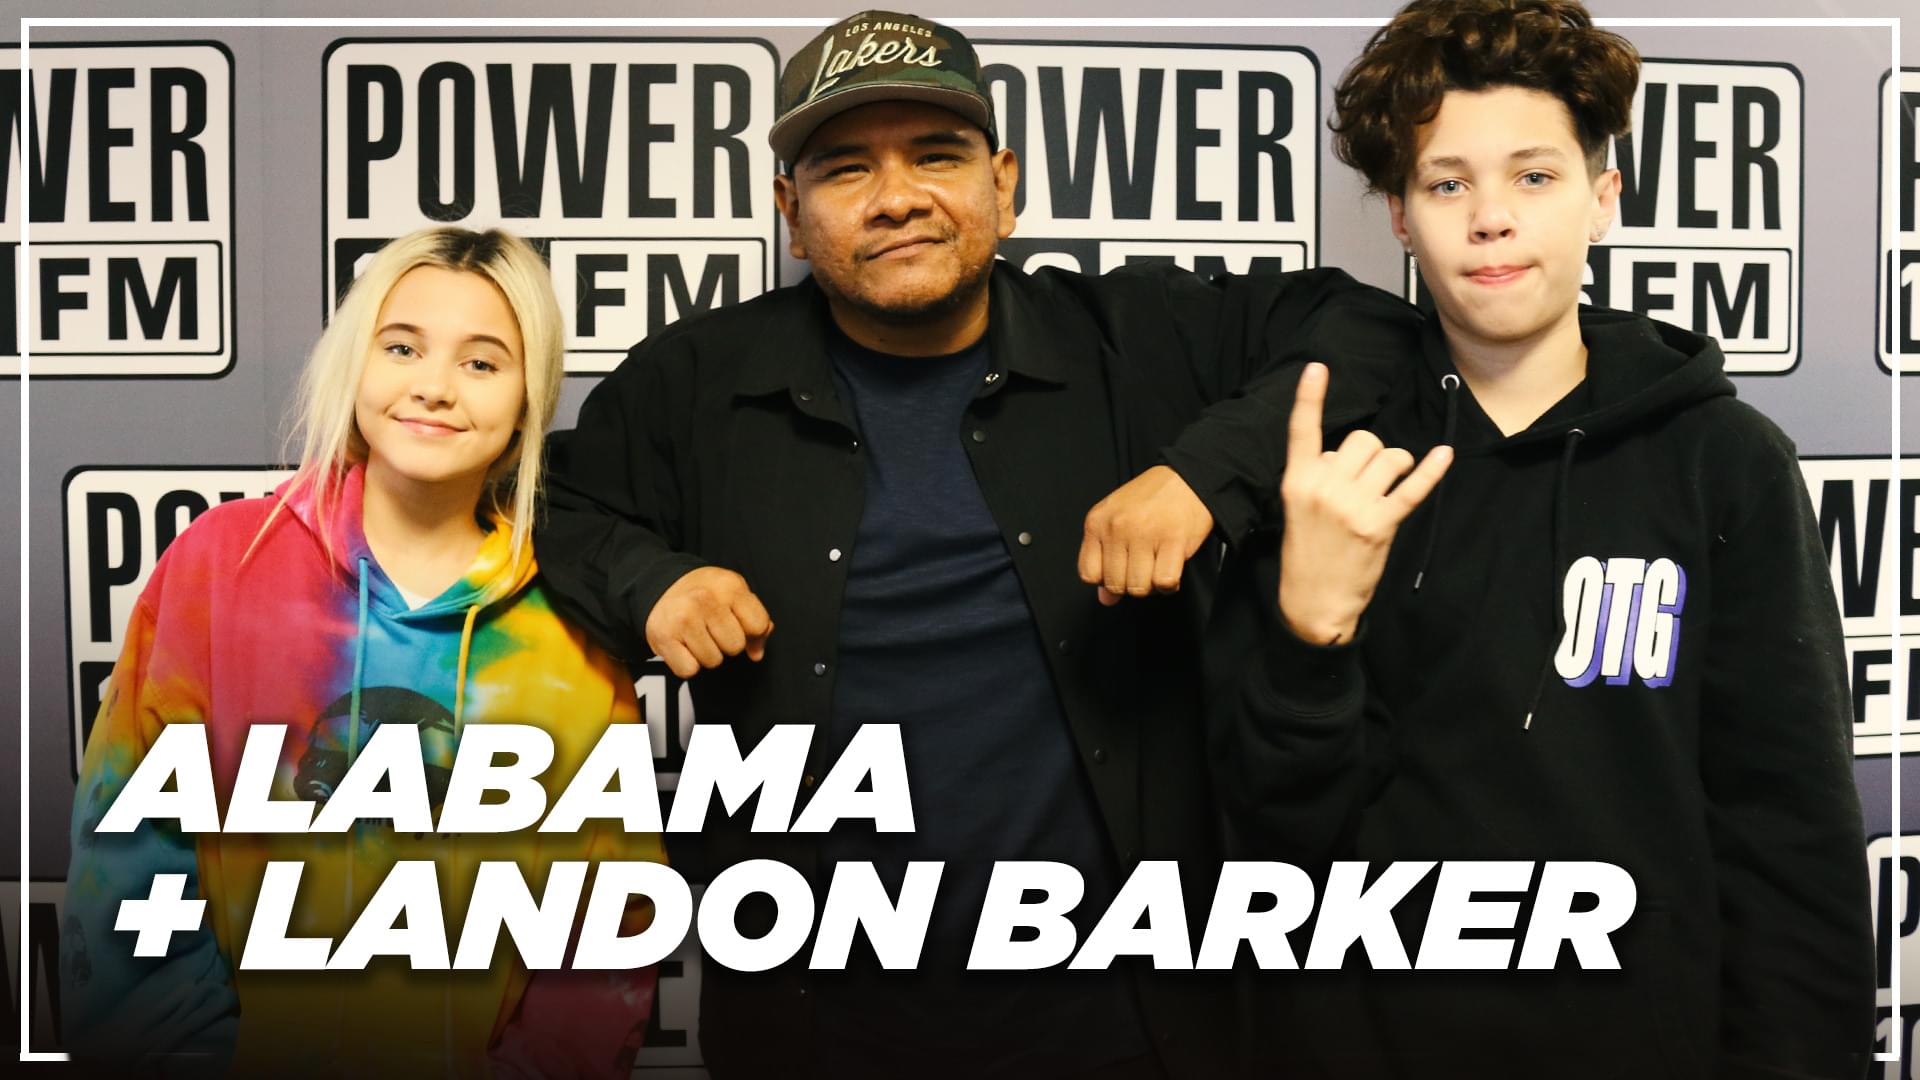 Alabama & Landon Barker Follow Travis Barker’s Footsteps + Enter Music Industry